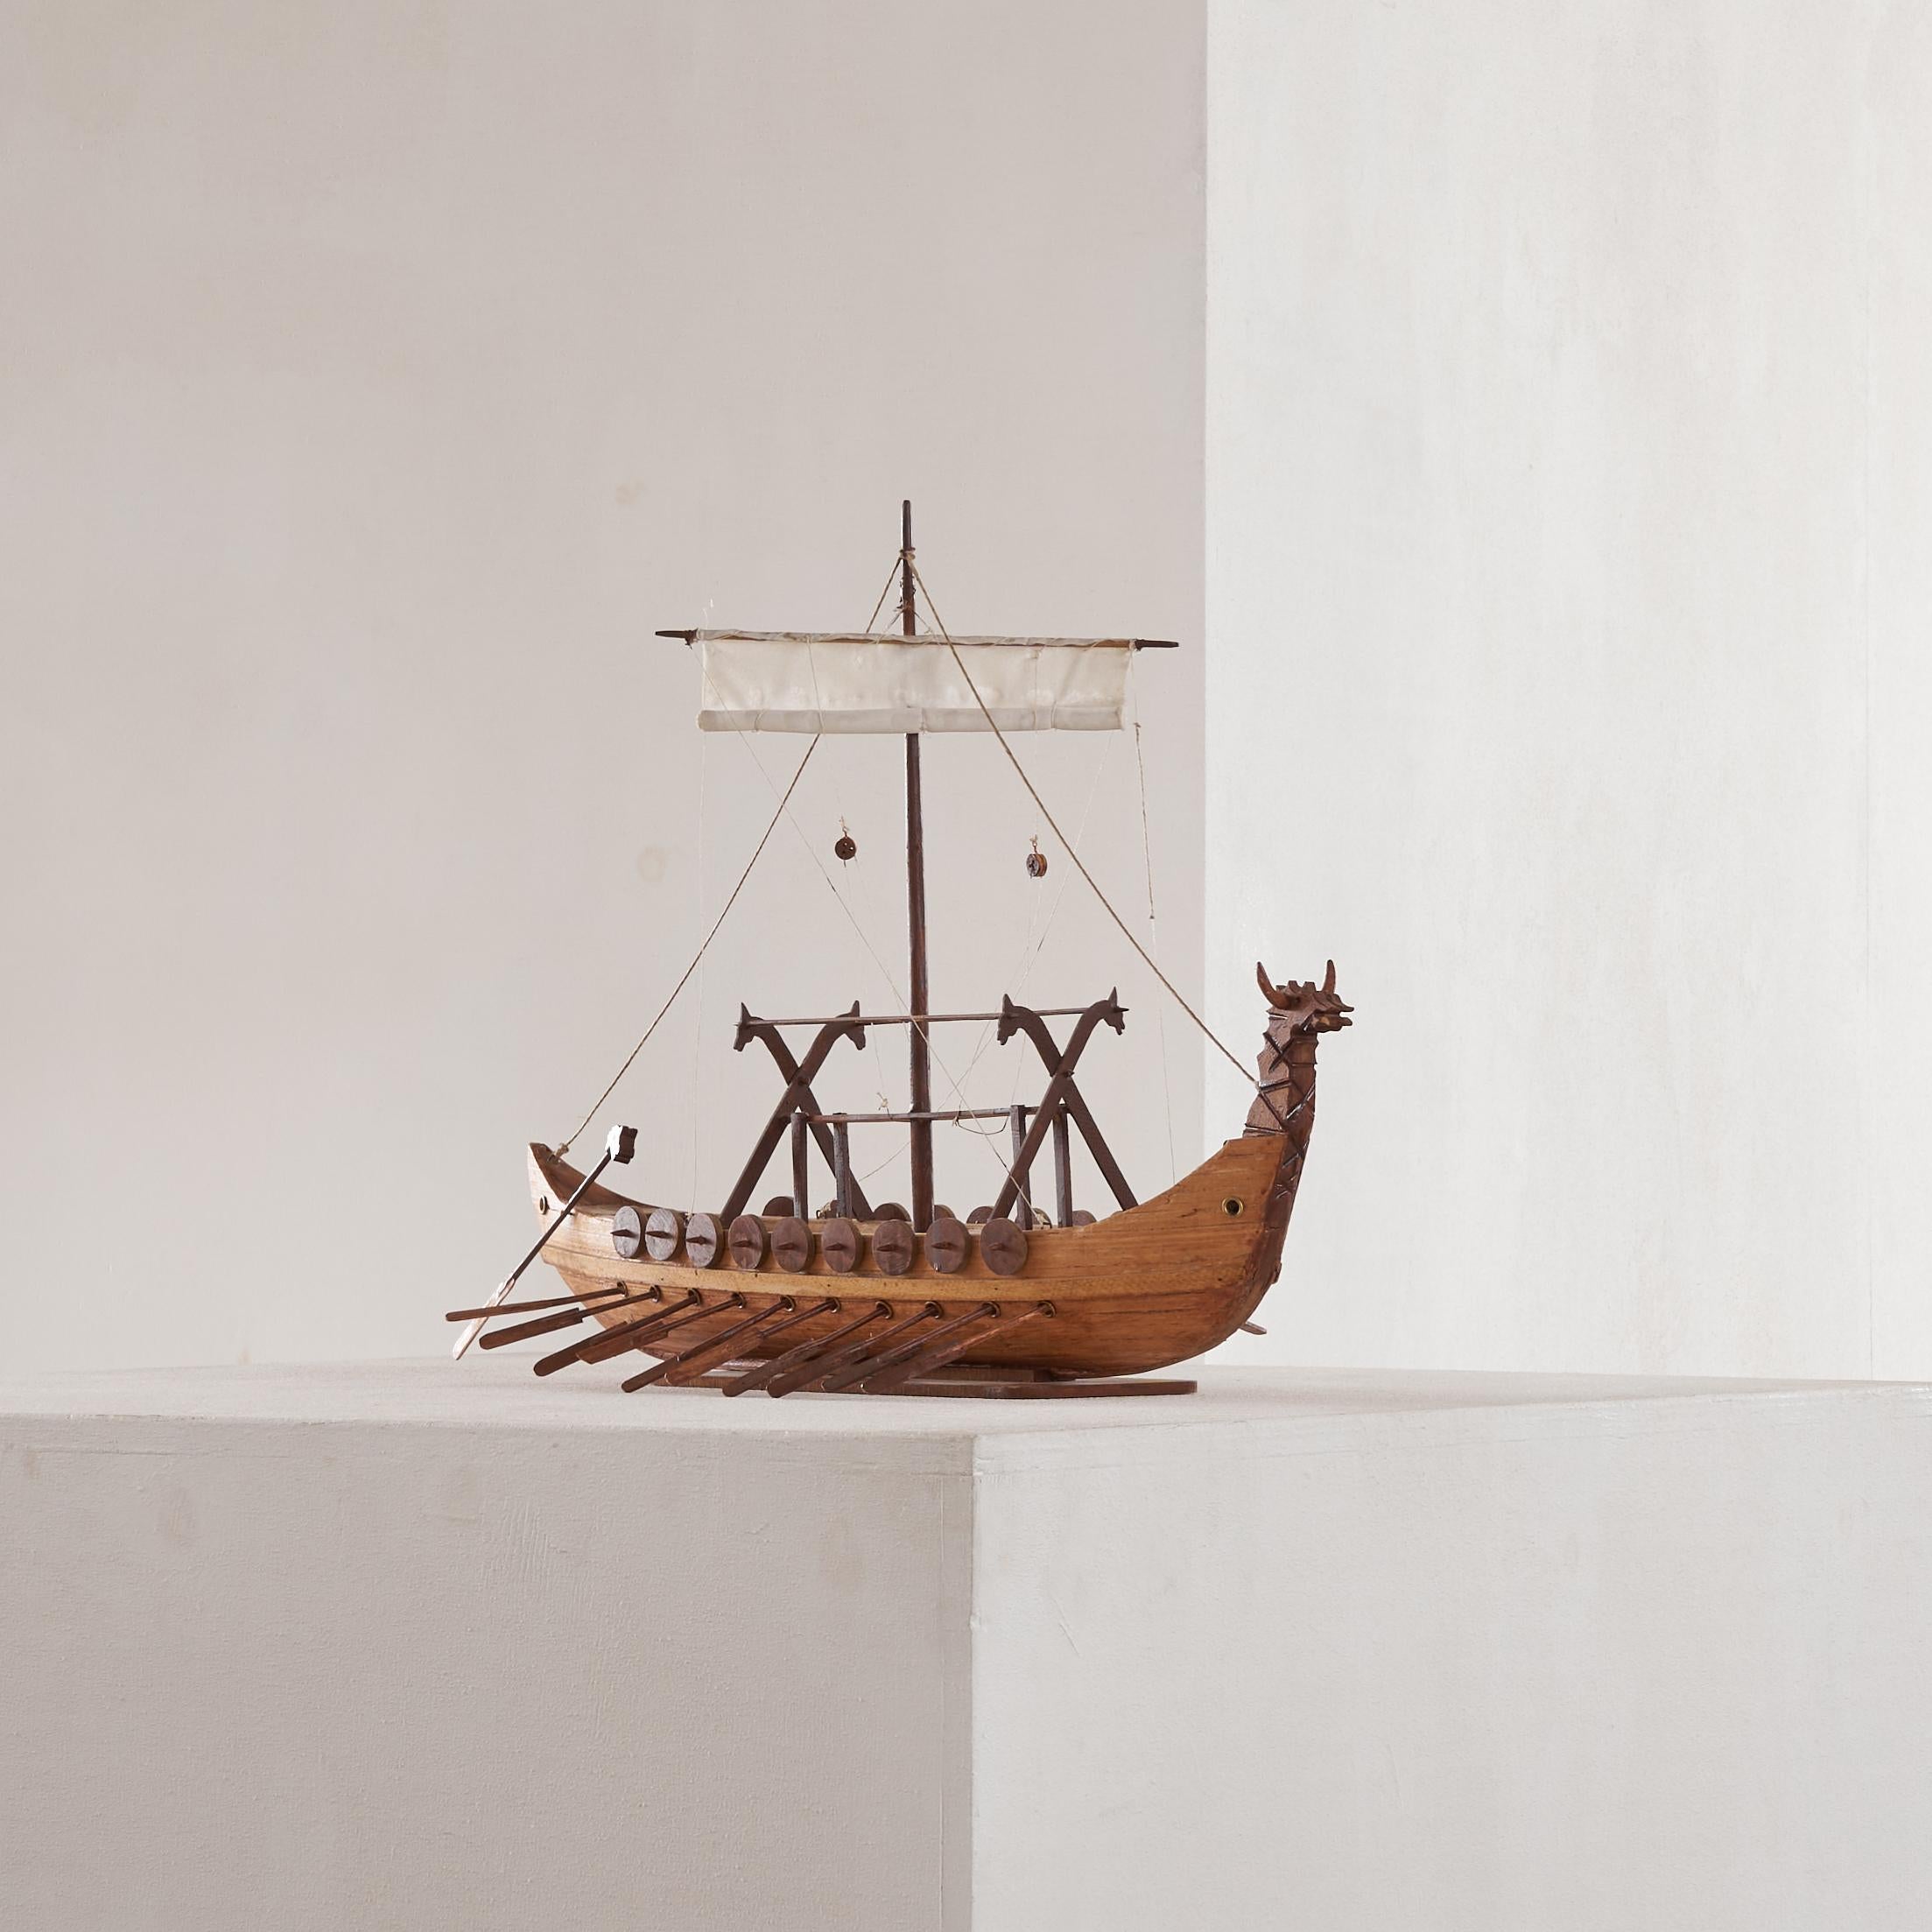 Mid Century Folk Art Wikingerschiff in Holz 1960er Jahre.

Schönes Wikingerschiff in Volkskunst, hergestellt von einem Handwerker zu Hause oder vielleicht als Schulprojekt irgendwo in den 1960er oder 1970er Jahren. Wunderbar detailliert, aber